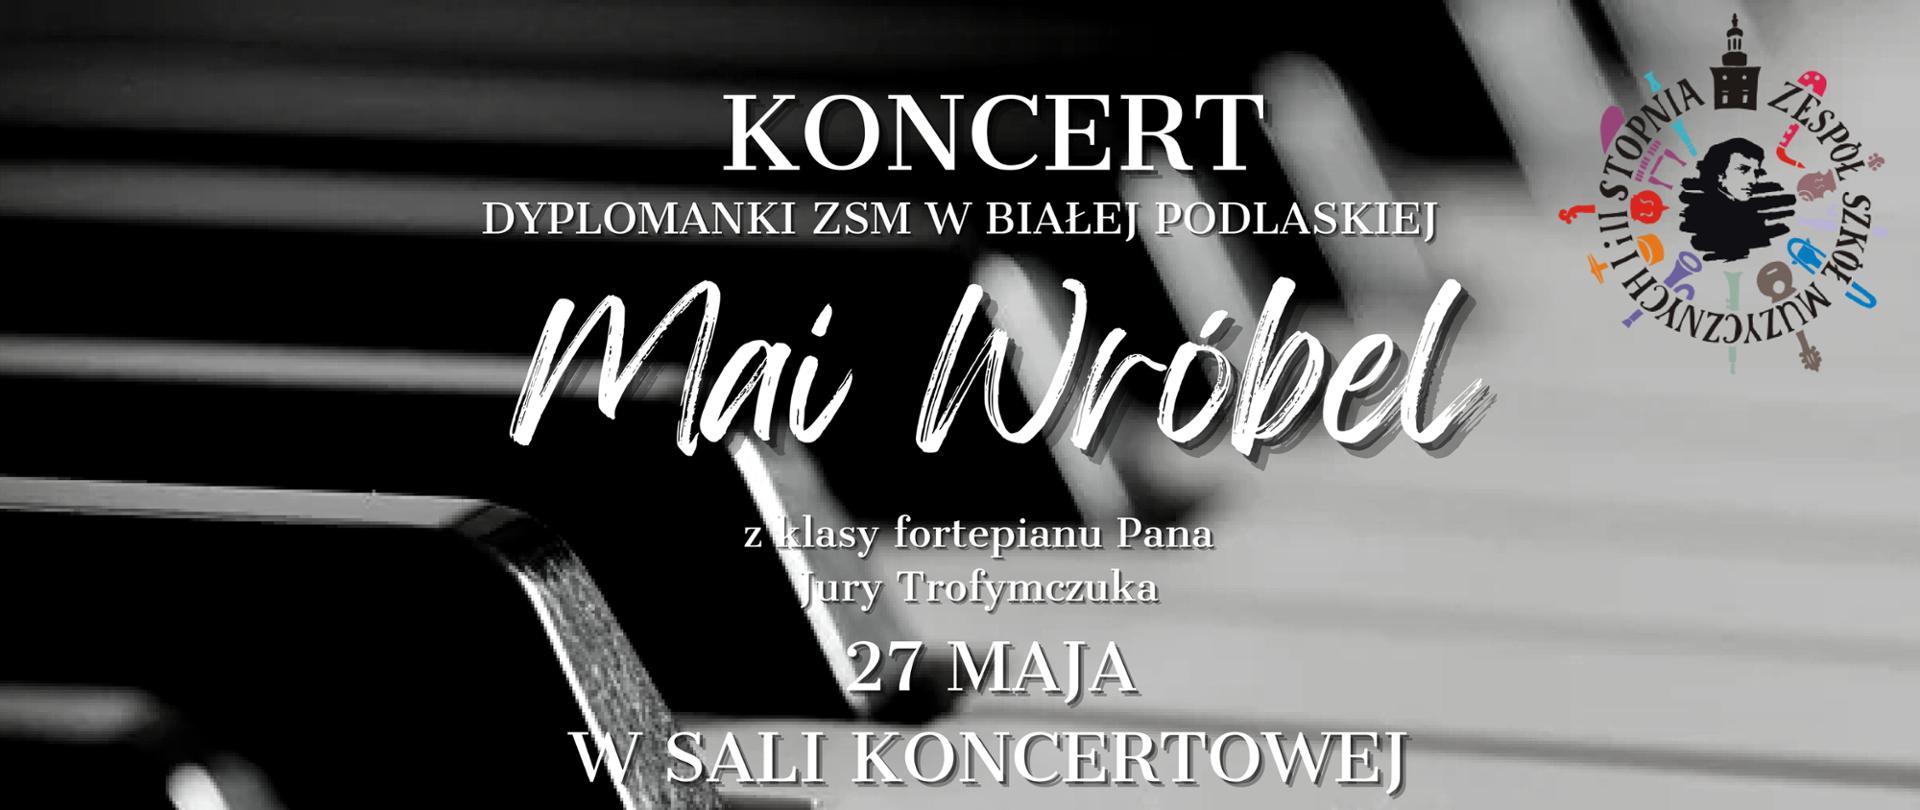 Informacje na temat koncertu na tle klawiatury fortepianu. W prawym górnym rogu logo ZSM w Białej Podlaskiej